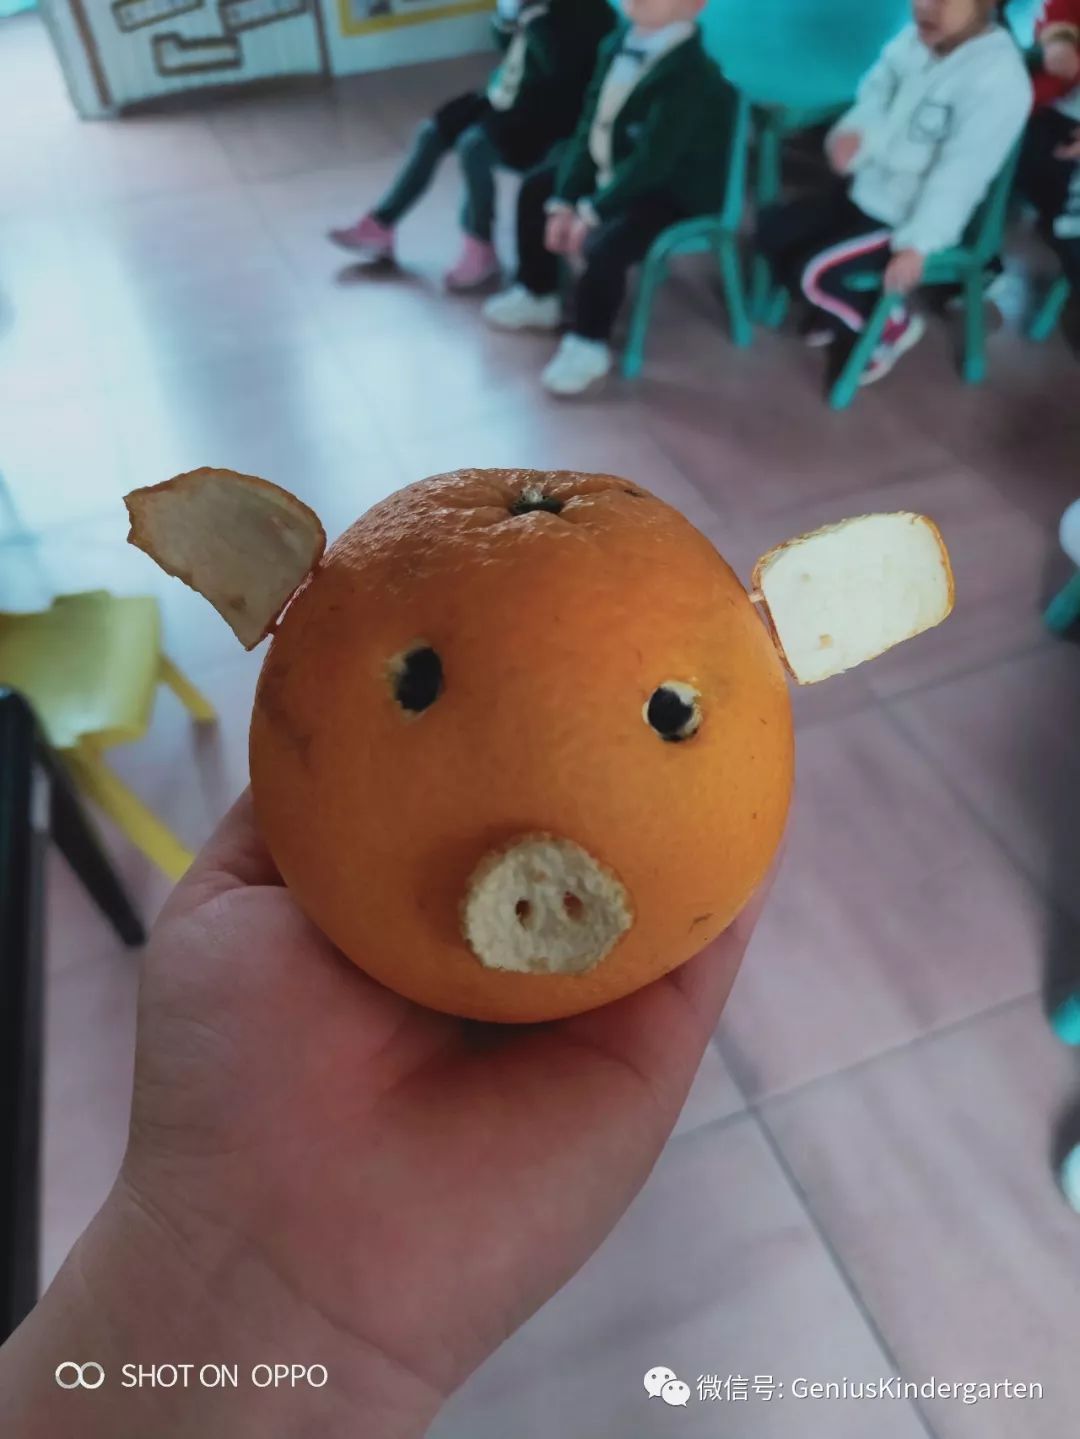 我们用摘来的大橙子,制作可爱的小动物